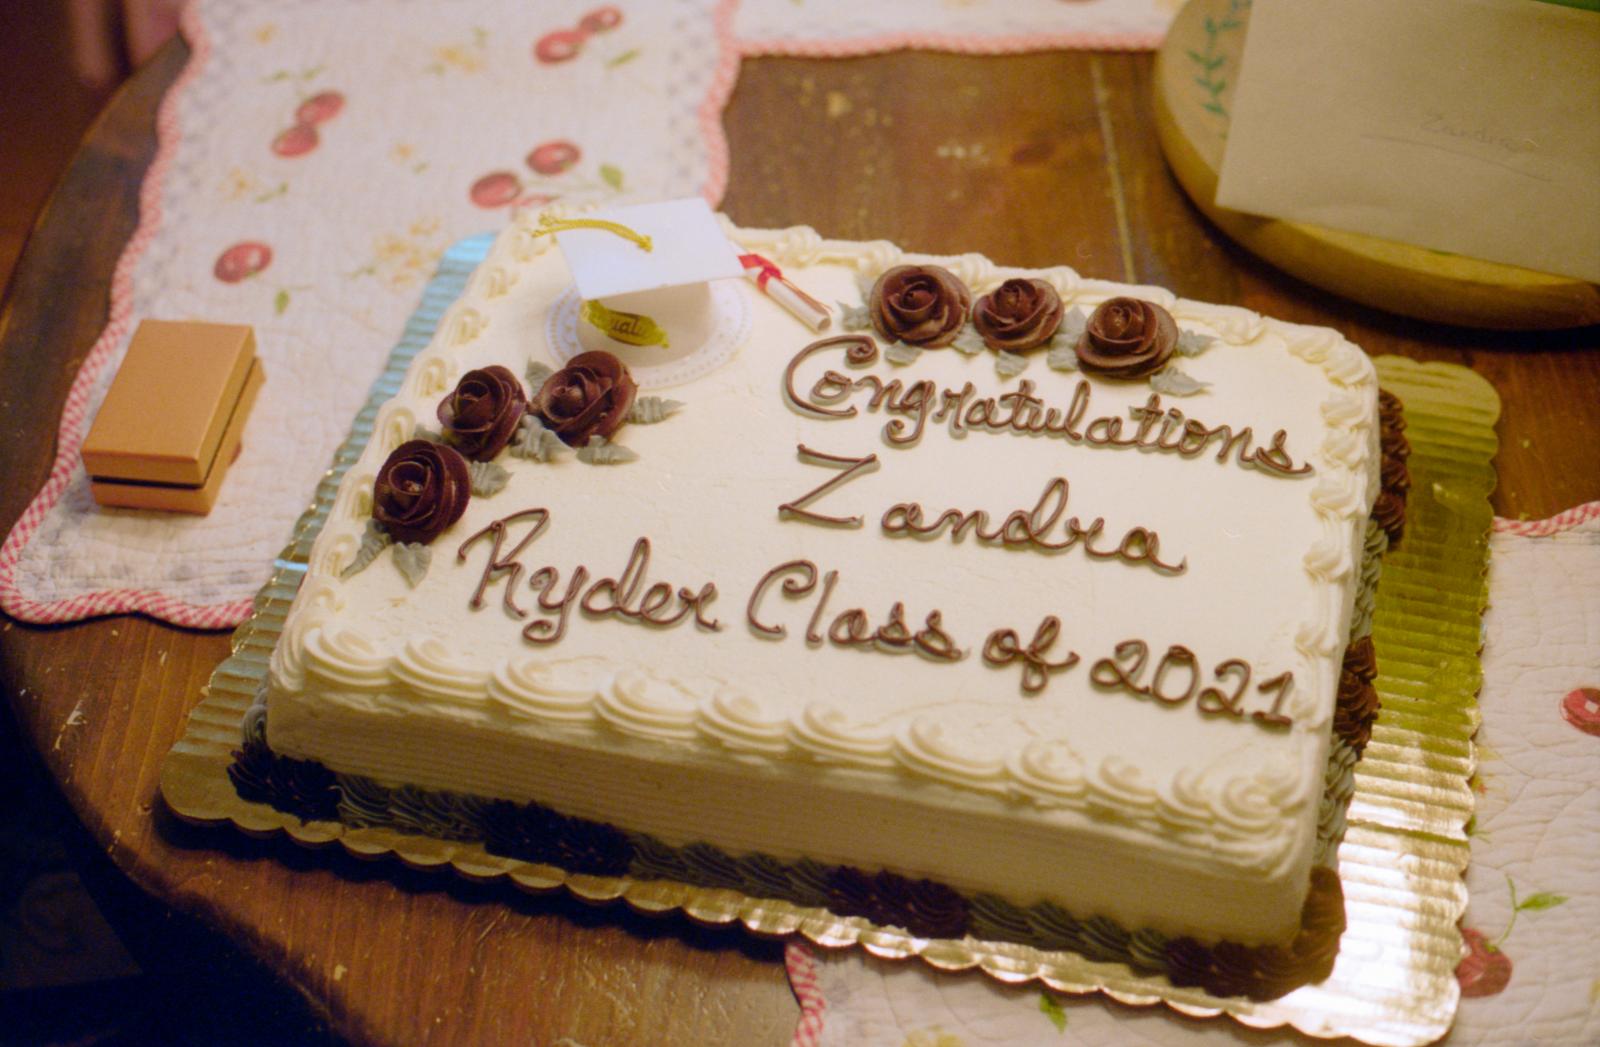 Zandra's Cake, May 2021